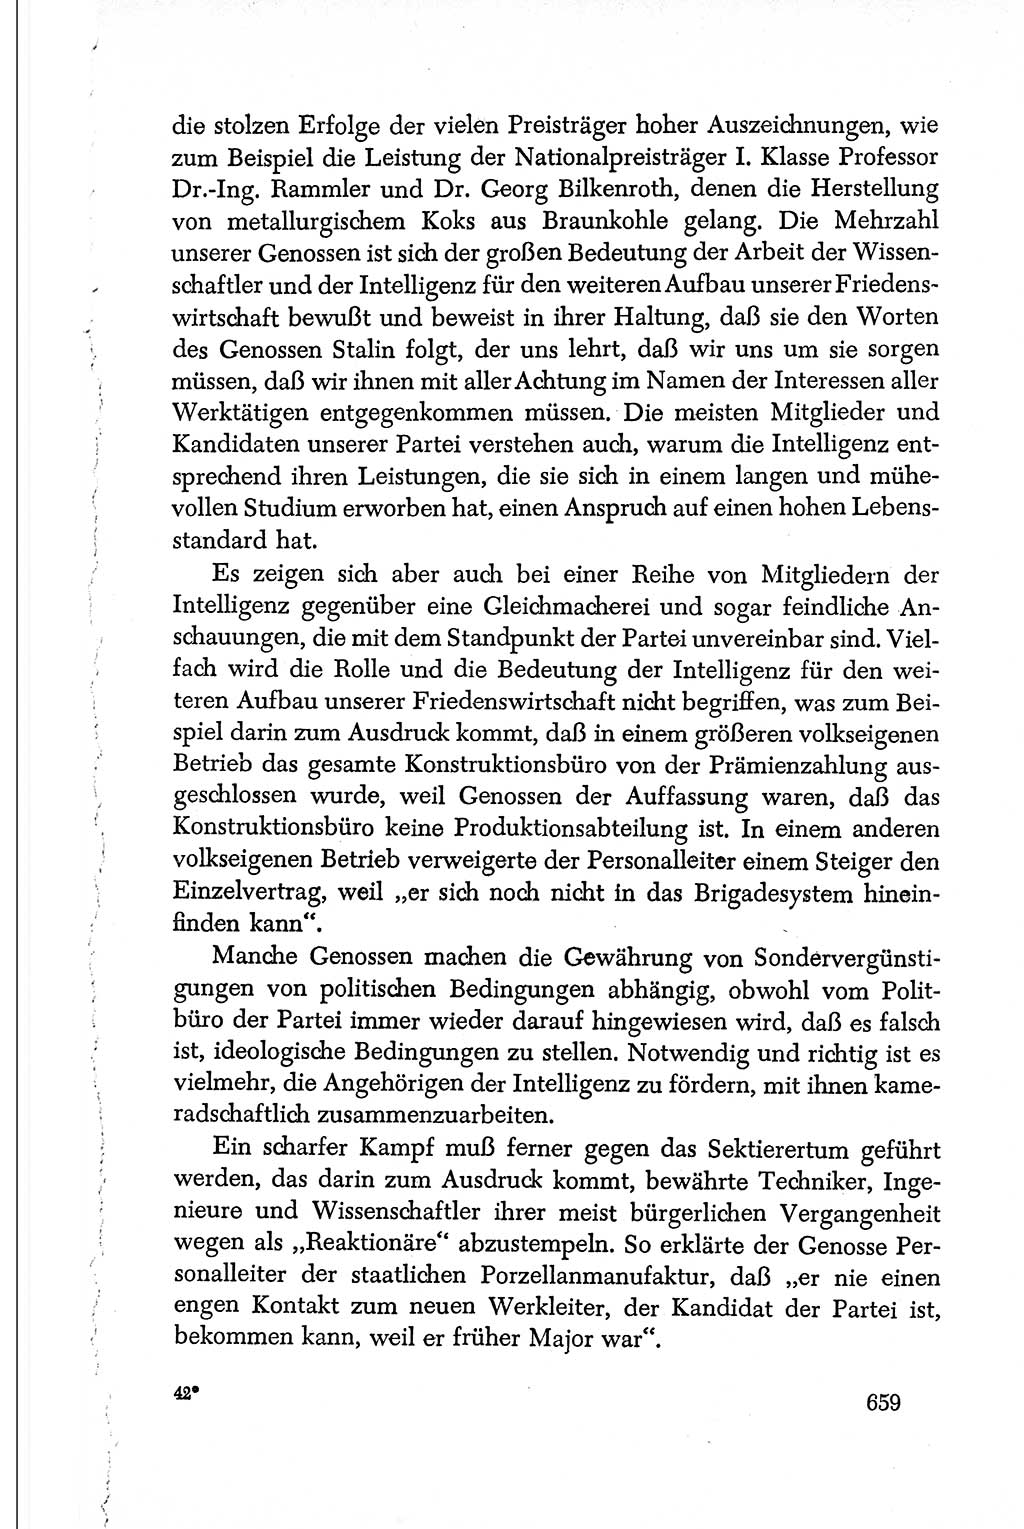 Dokumente der Sozialistischen Einheitspartei Deutschlands (SED) [Deutsche Demokratische Republik (DDR)] 1950-1952, Seite 659 (Dok. SED DDR 1950-1952, S. 659)